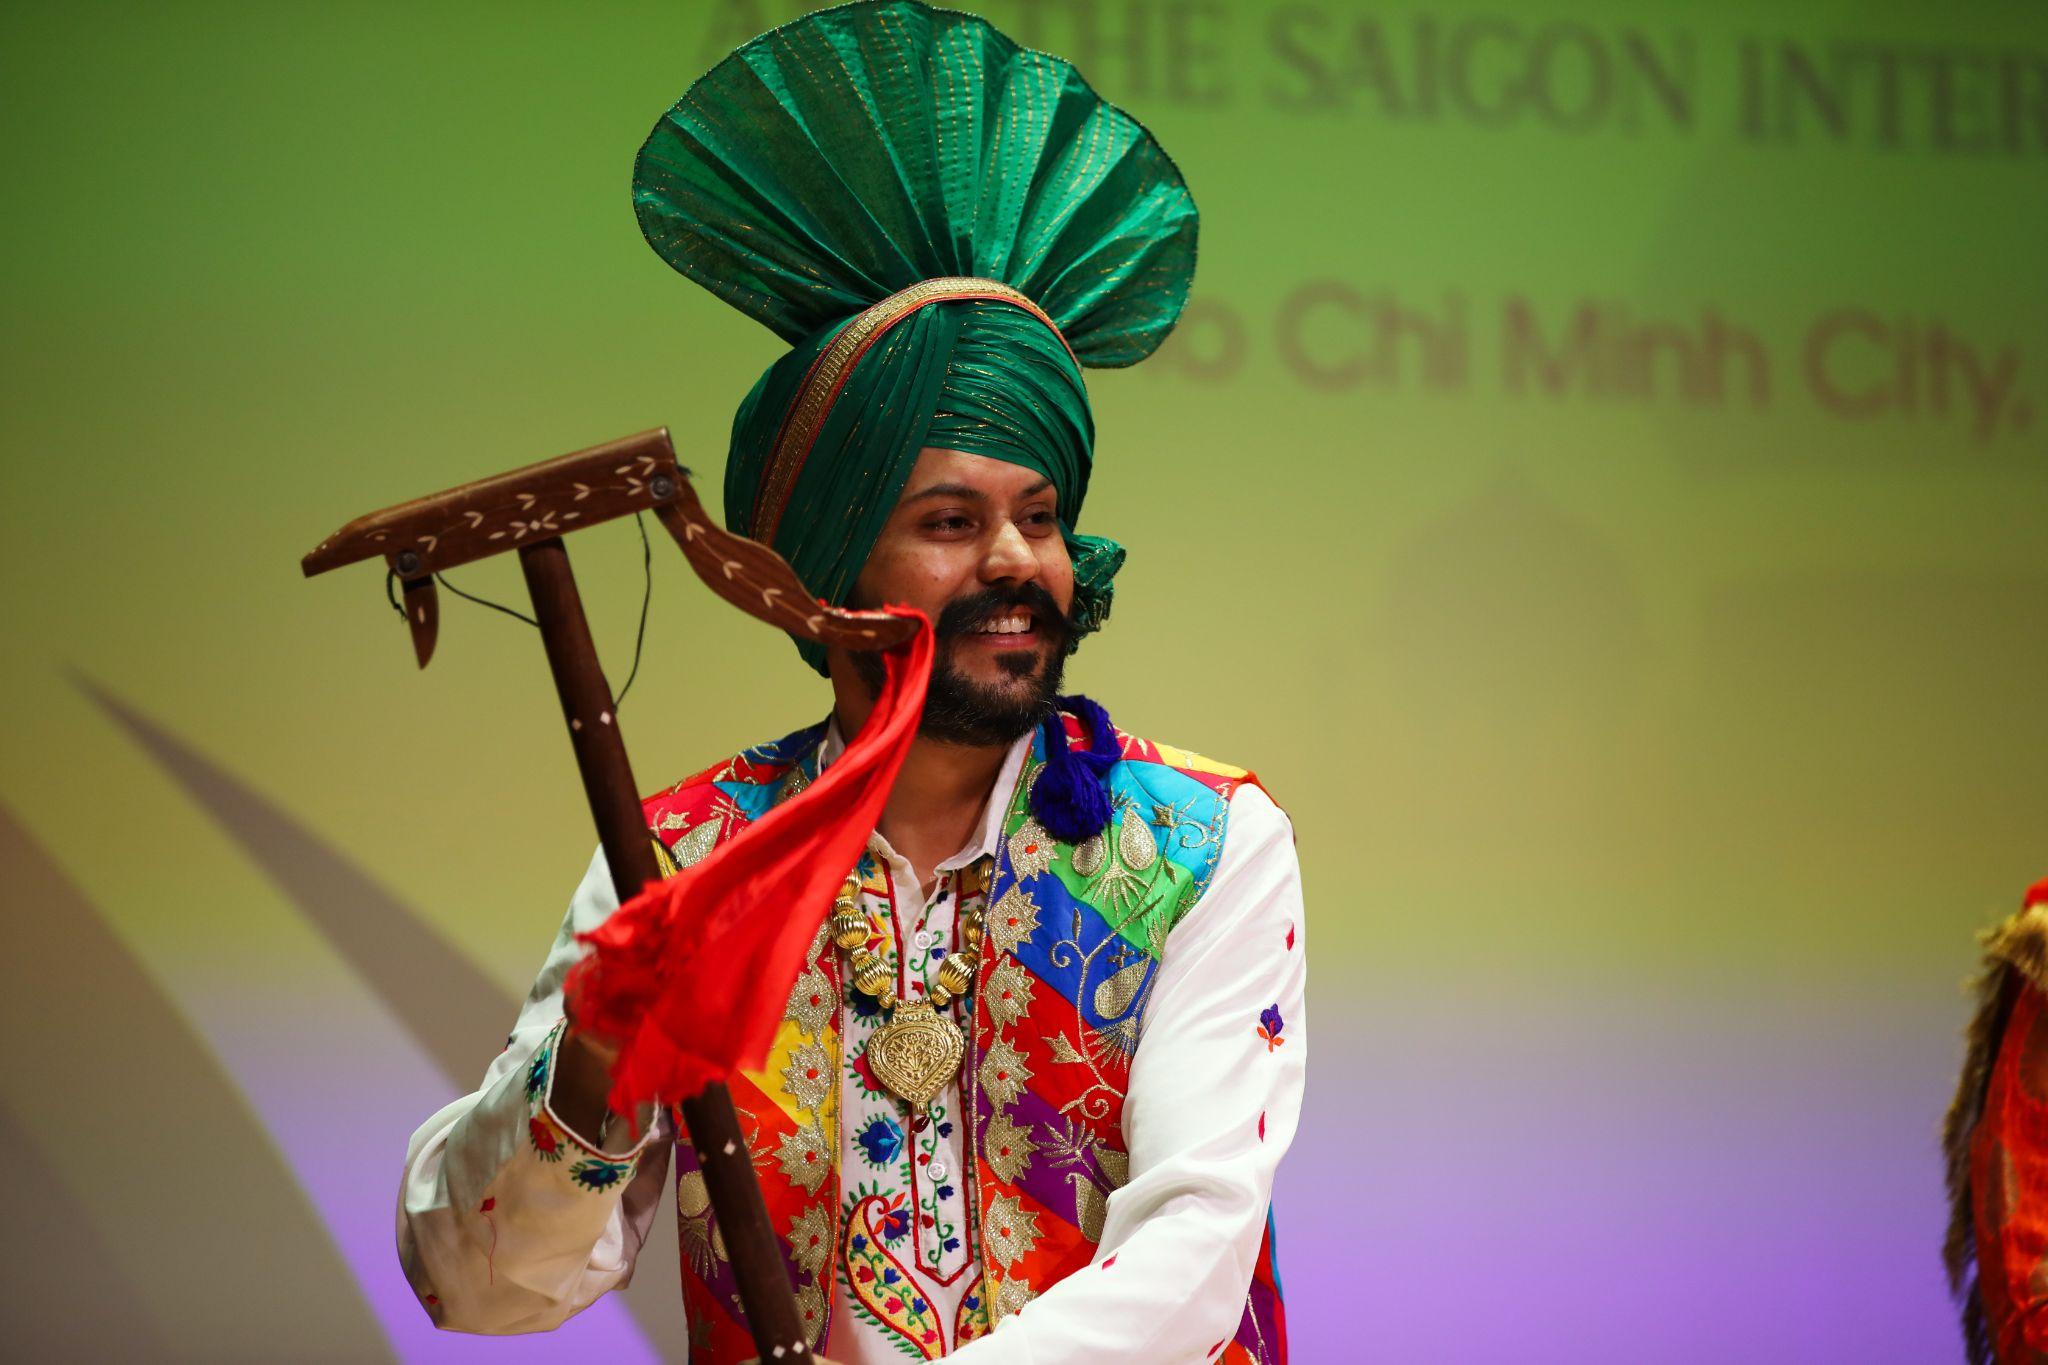 Đặc sắc những điệu múa dân gian Ấn Độ tại SIU